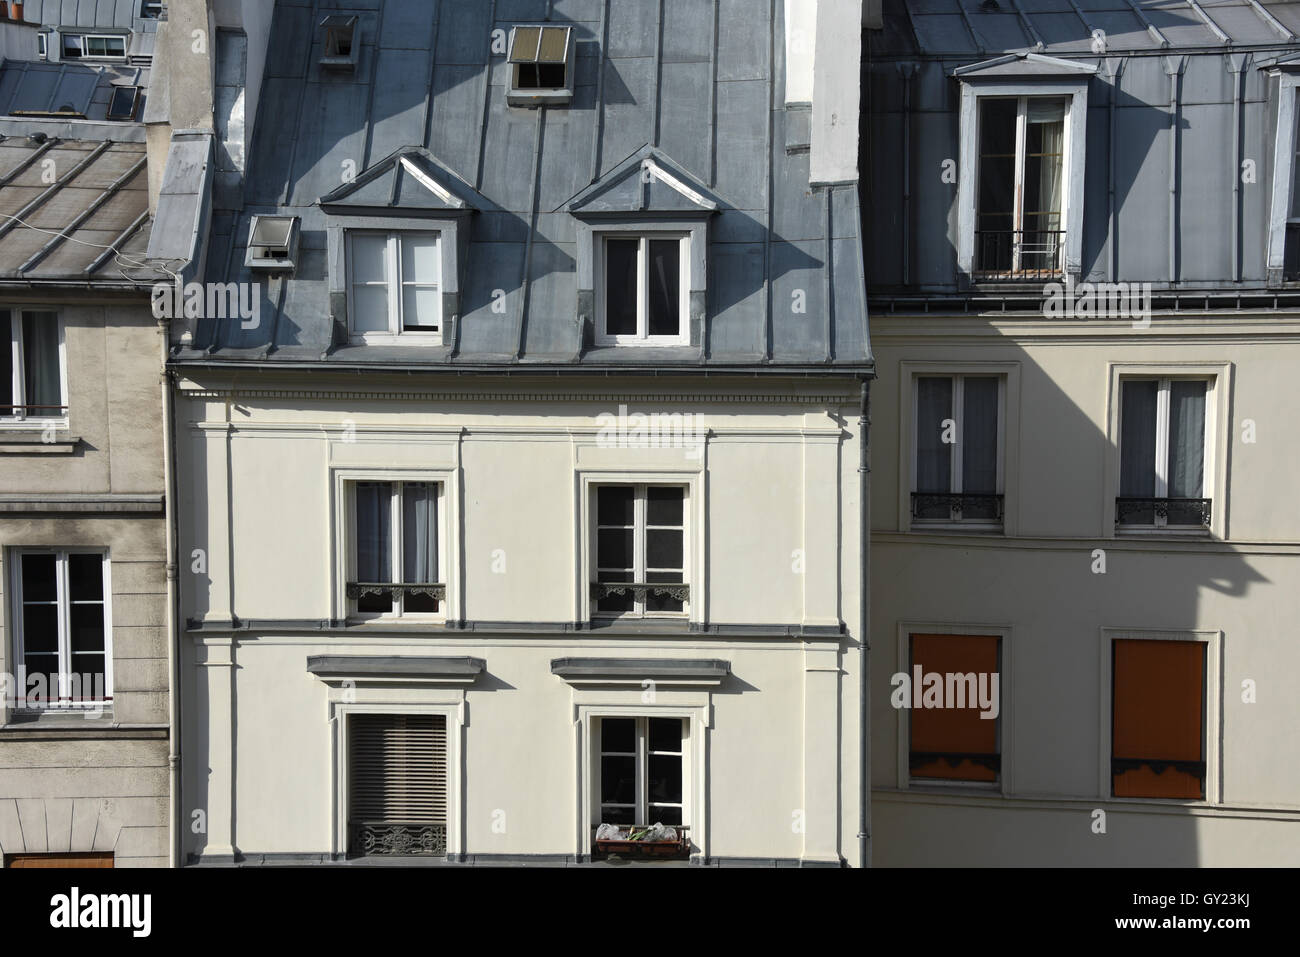 Le toit de zinc de la maison traditionnelle, rue Saint Dominique, Paris, France Banque D'Images